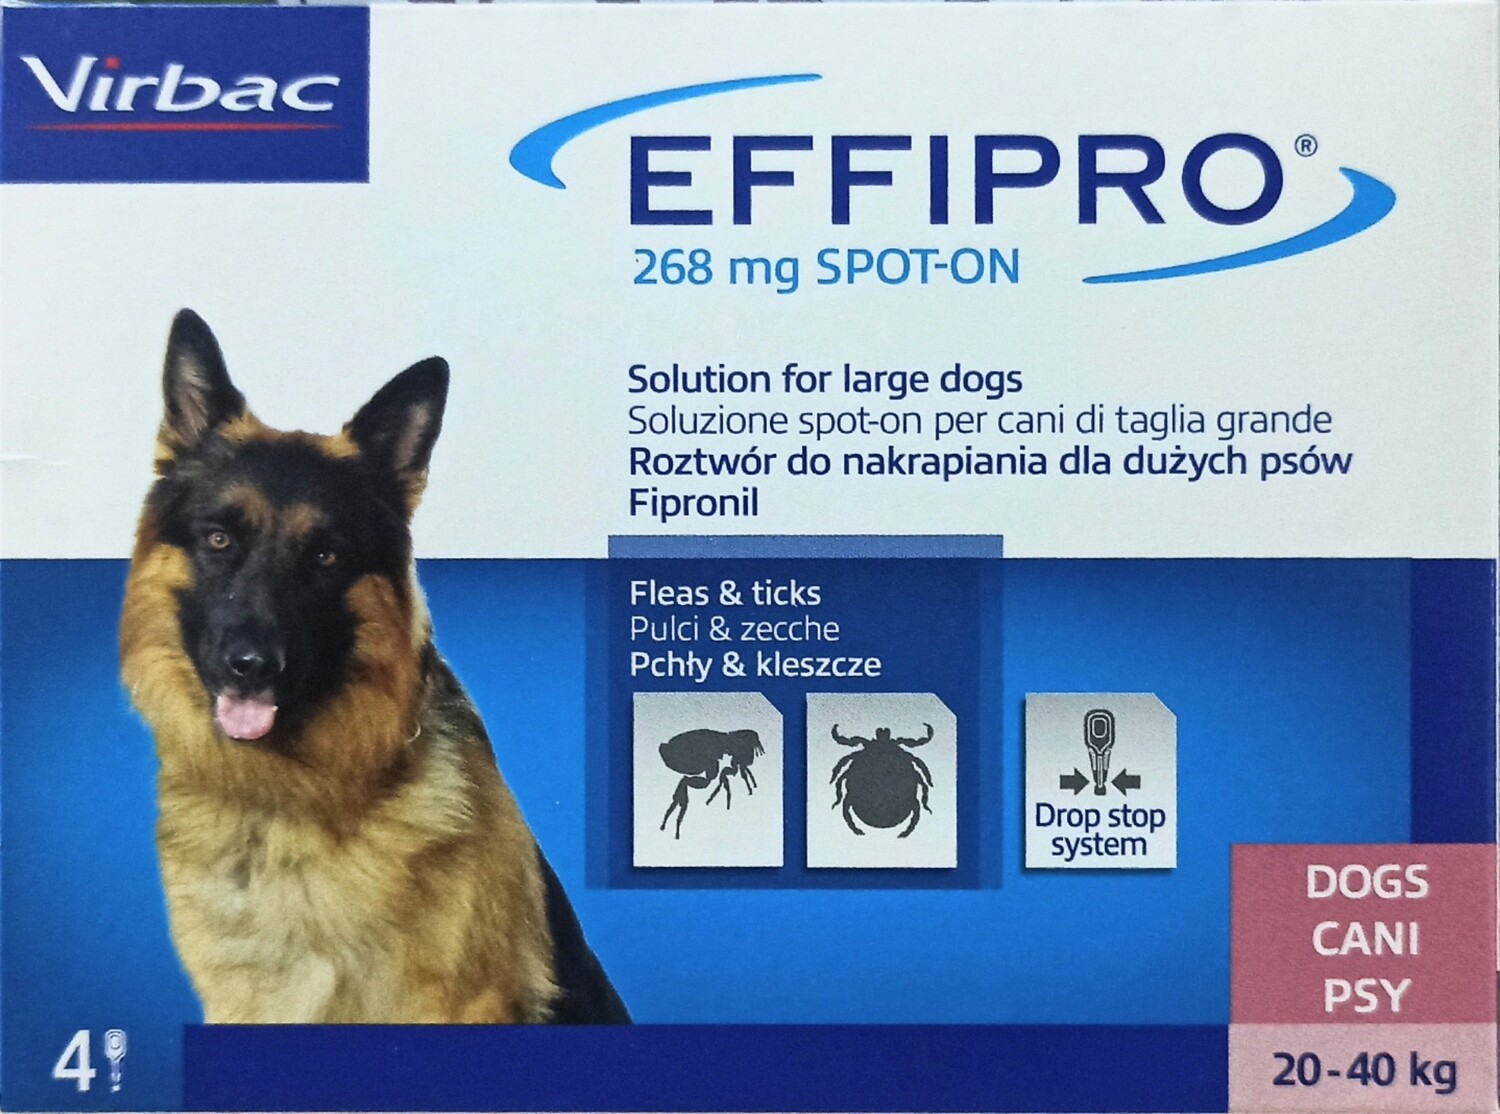 Effipro Duo Antiparassitari - 4 Pip. Spot-On Per Cani di Kg 20-40